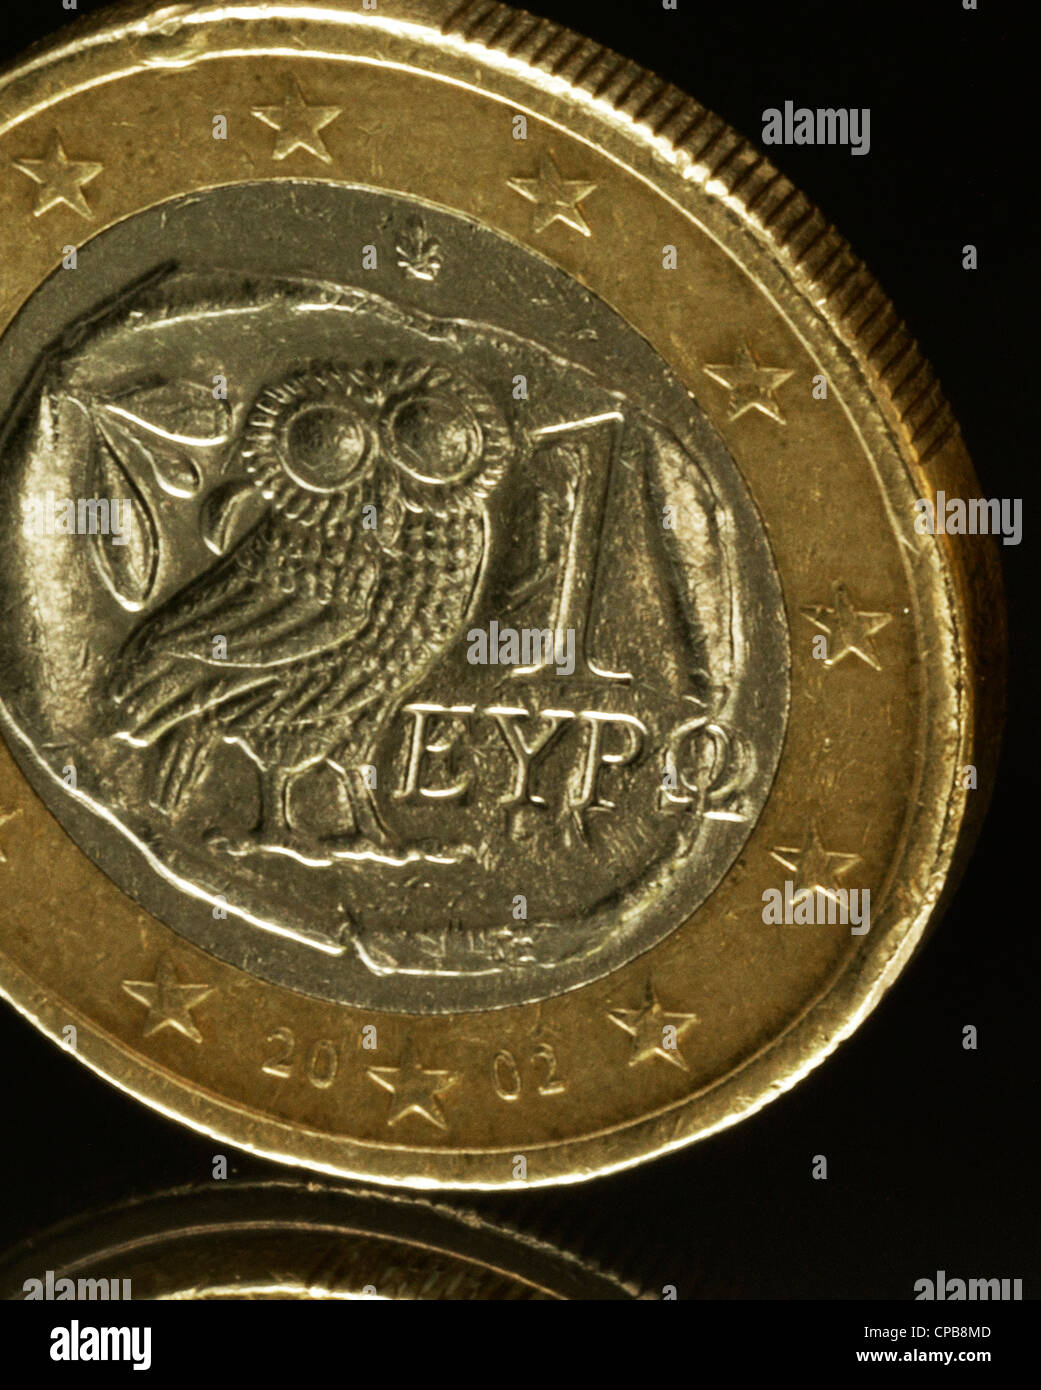 La devaluación de la moneda Euro griego Griechenland Euro del griego griechischer Euro Banco Euroabwertung Foto de stock